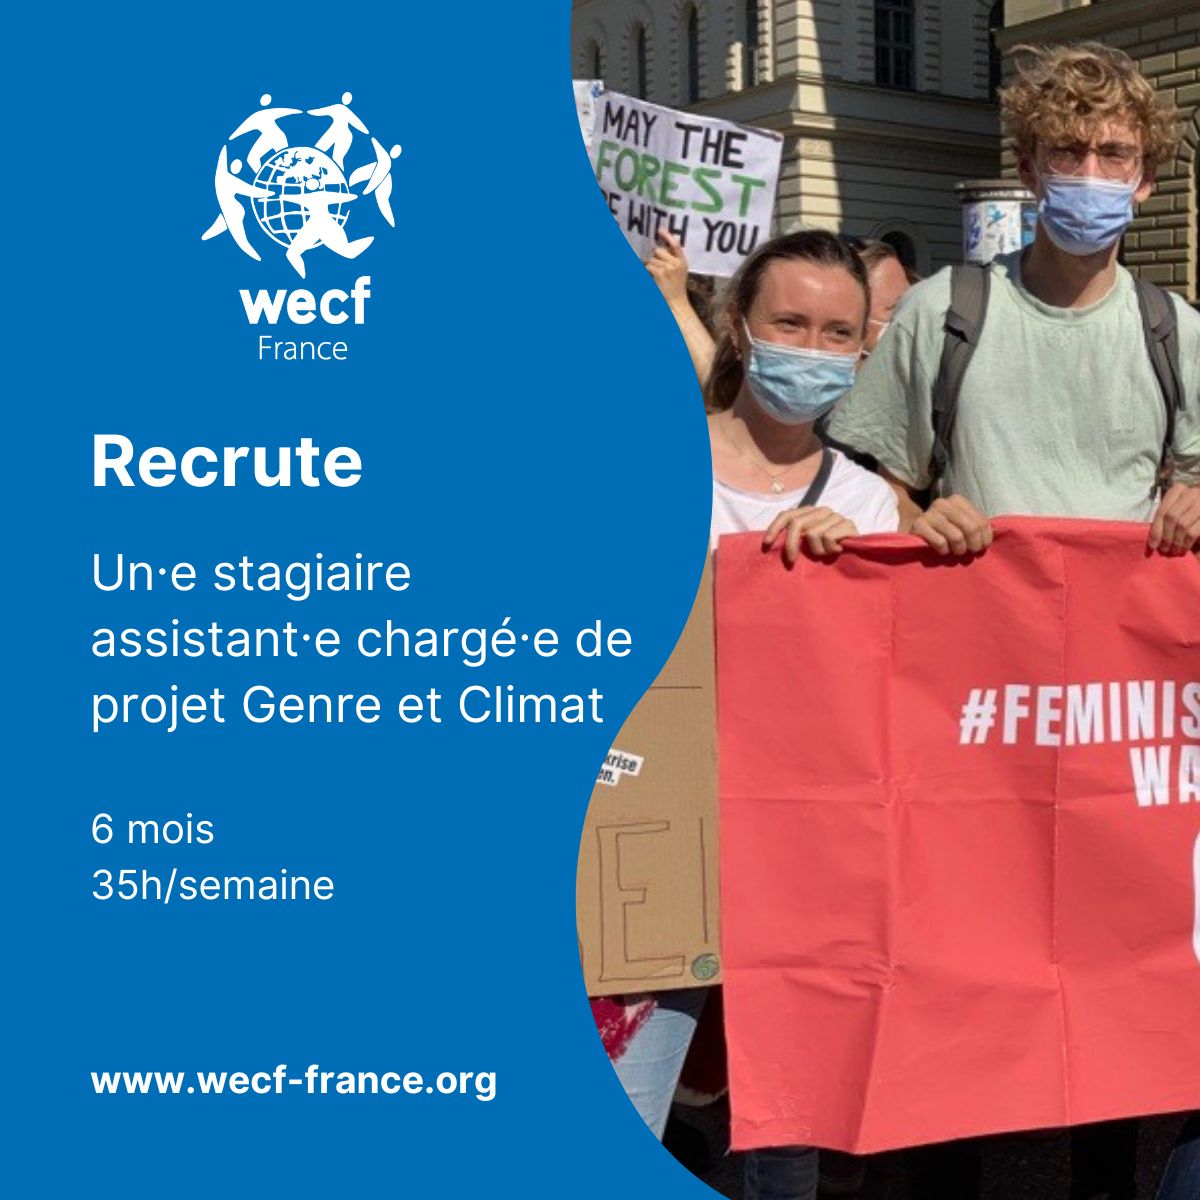 WECF France recrute un·e stagiaire assistant·e chargé·e de projet Genre et Climat